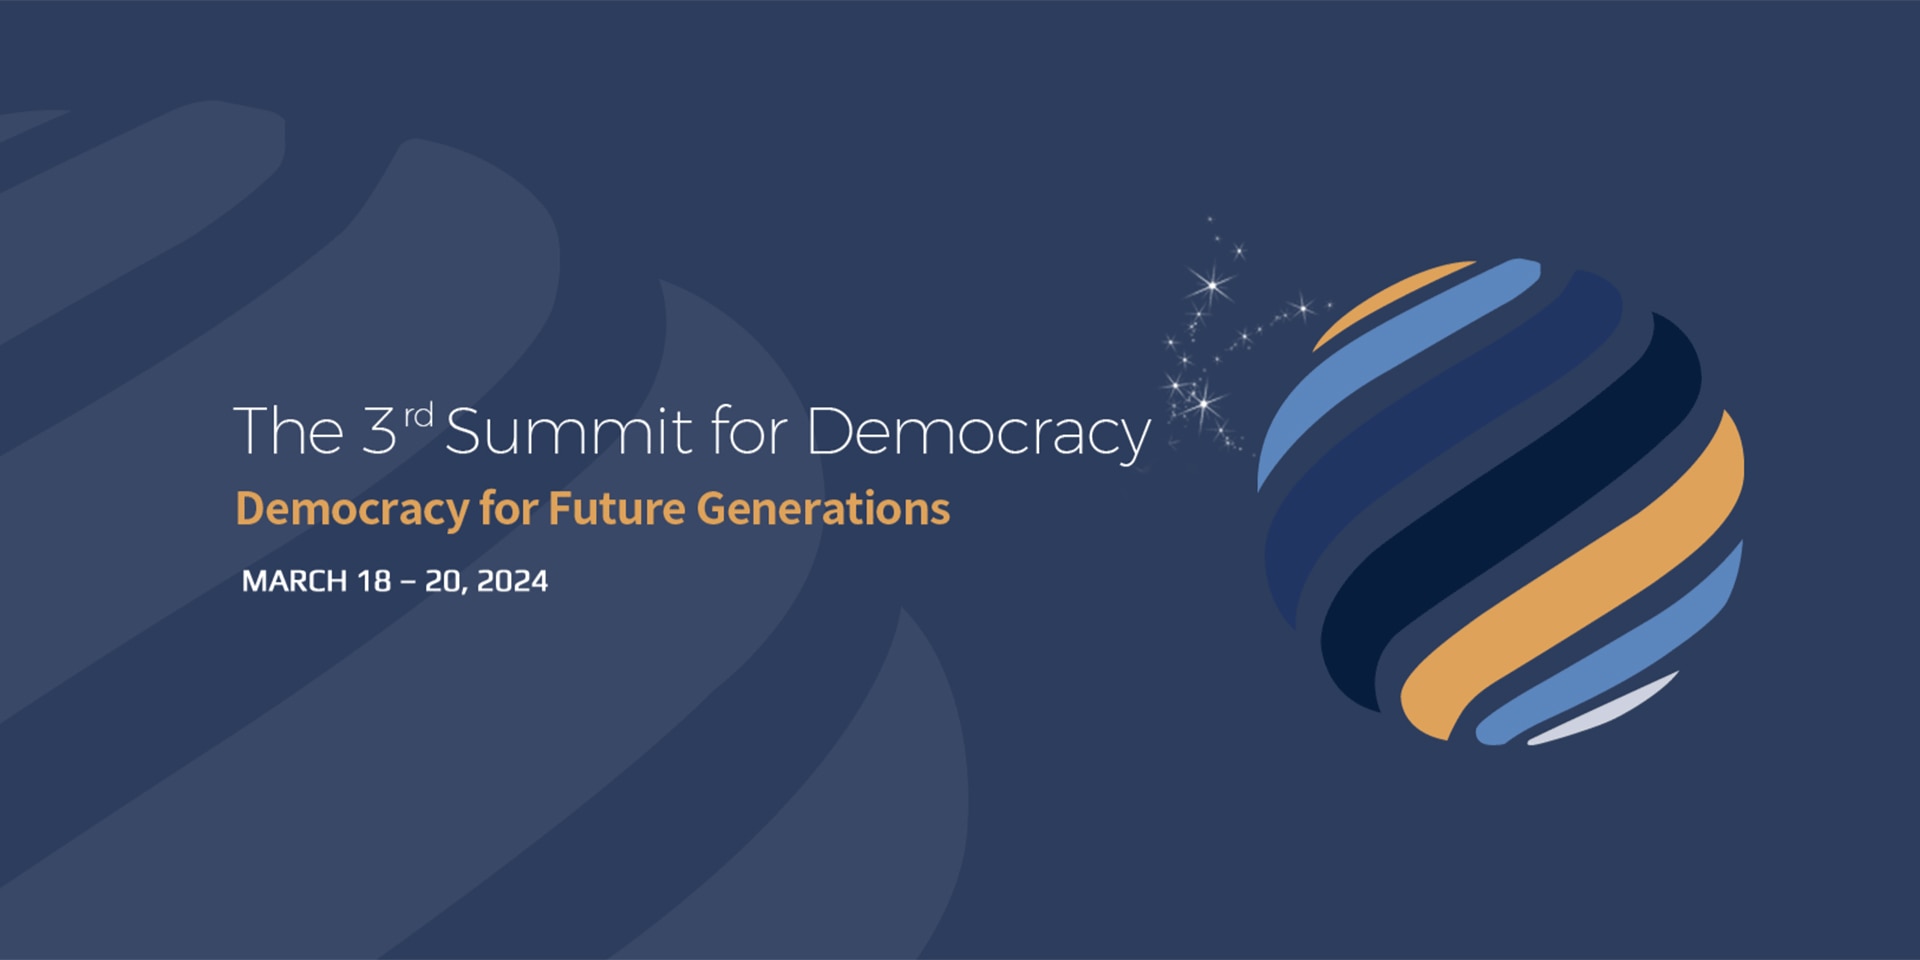 Rappresentazione schematizzata di un globo composto da linee colorate di giallo, blu e nero. Accanto si legge la scritta «Democrazia per le generazioni future», tema del terzo Summit per la democrazia in programma a Seoul.